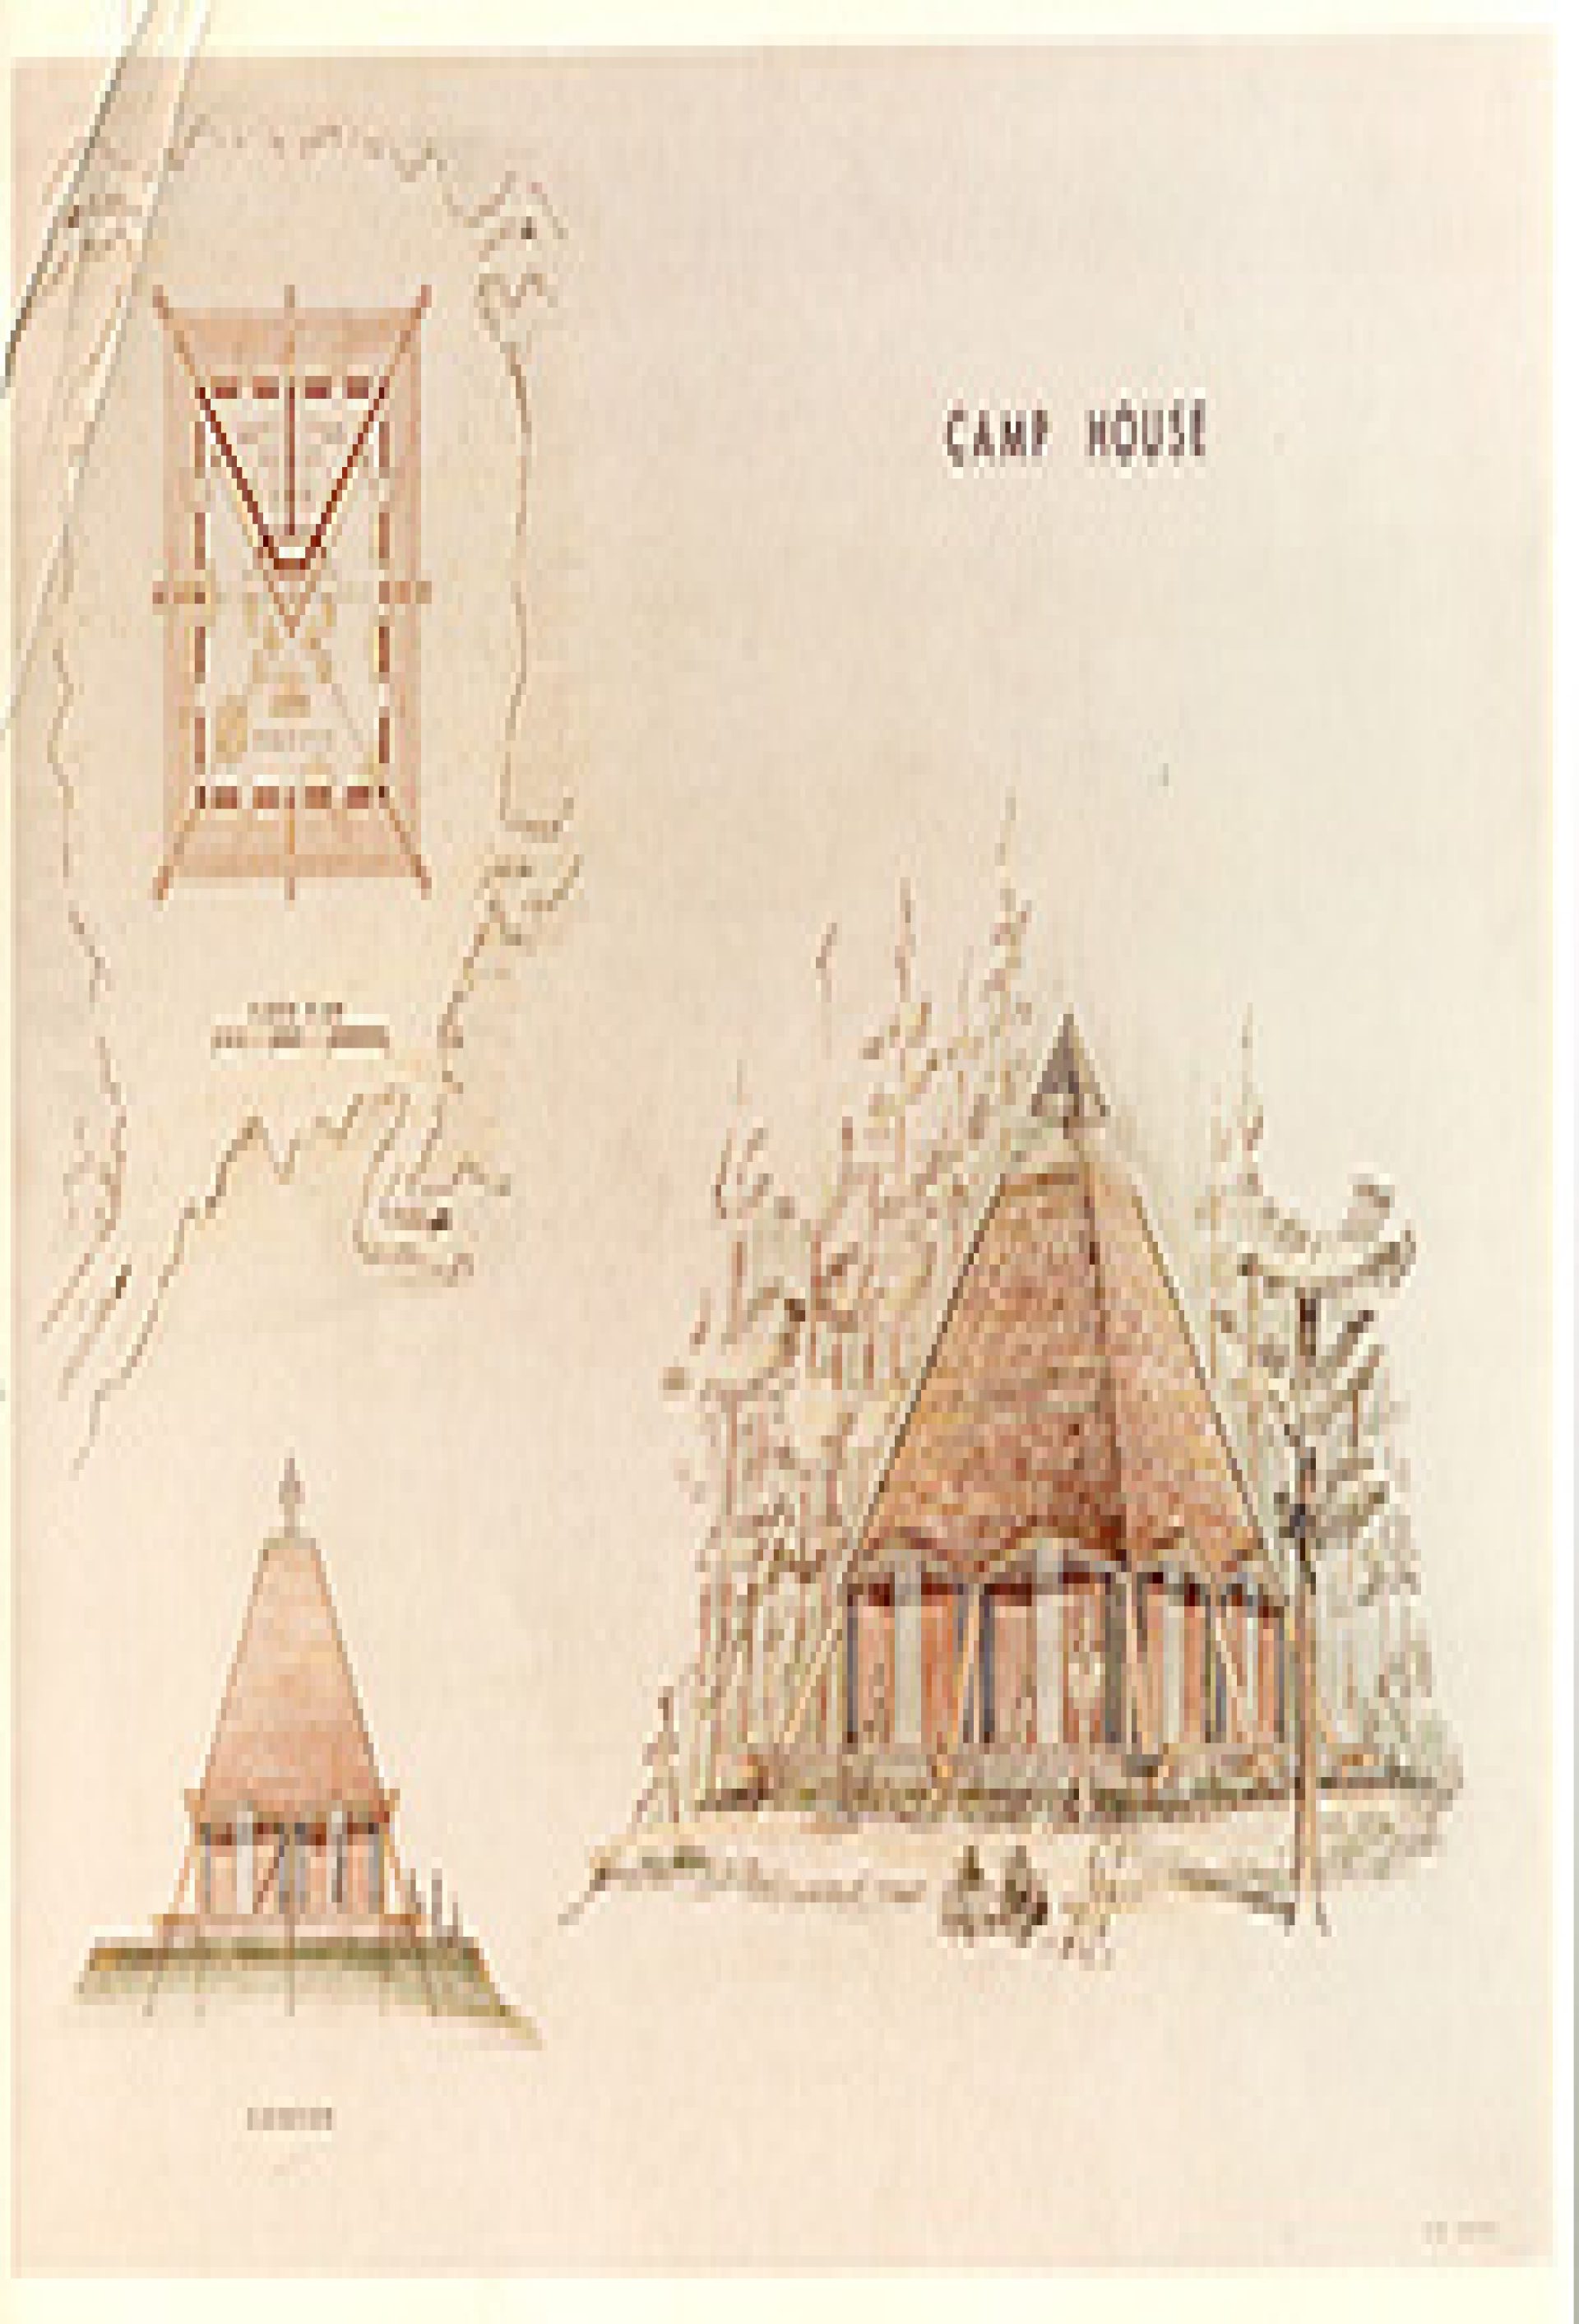 An illustration of Camp Arrowhead buildings.